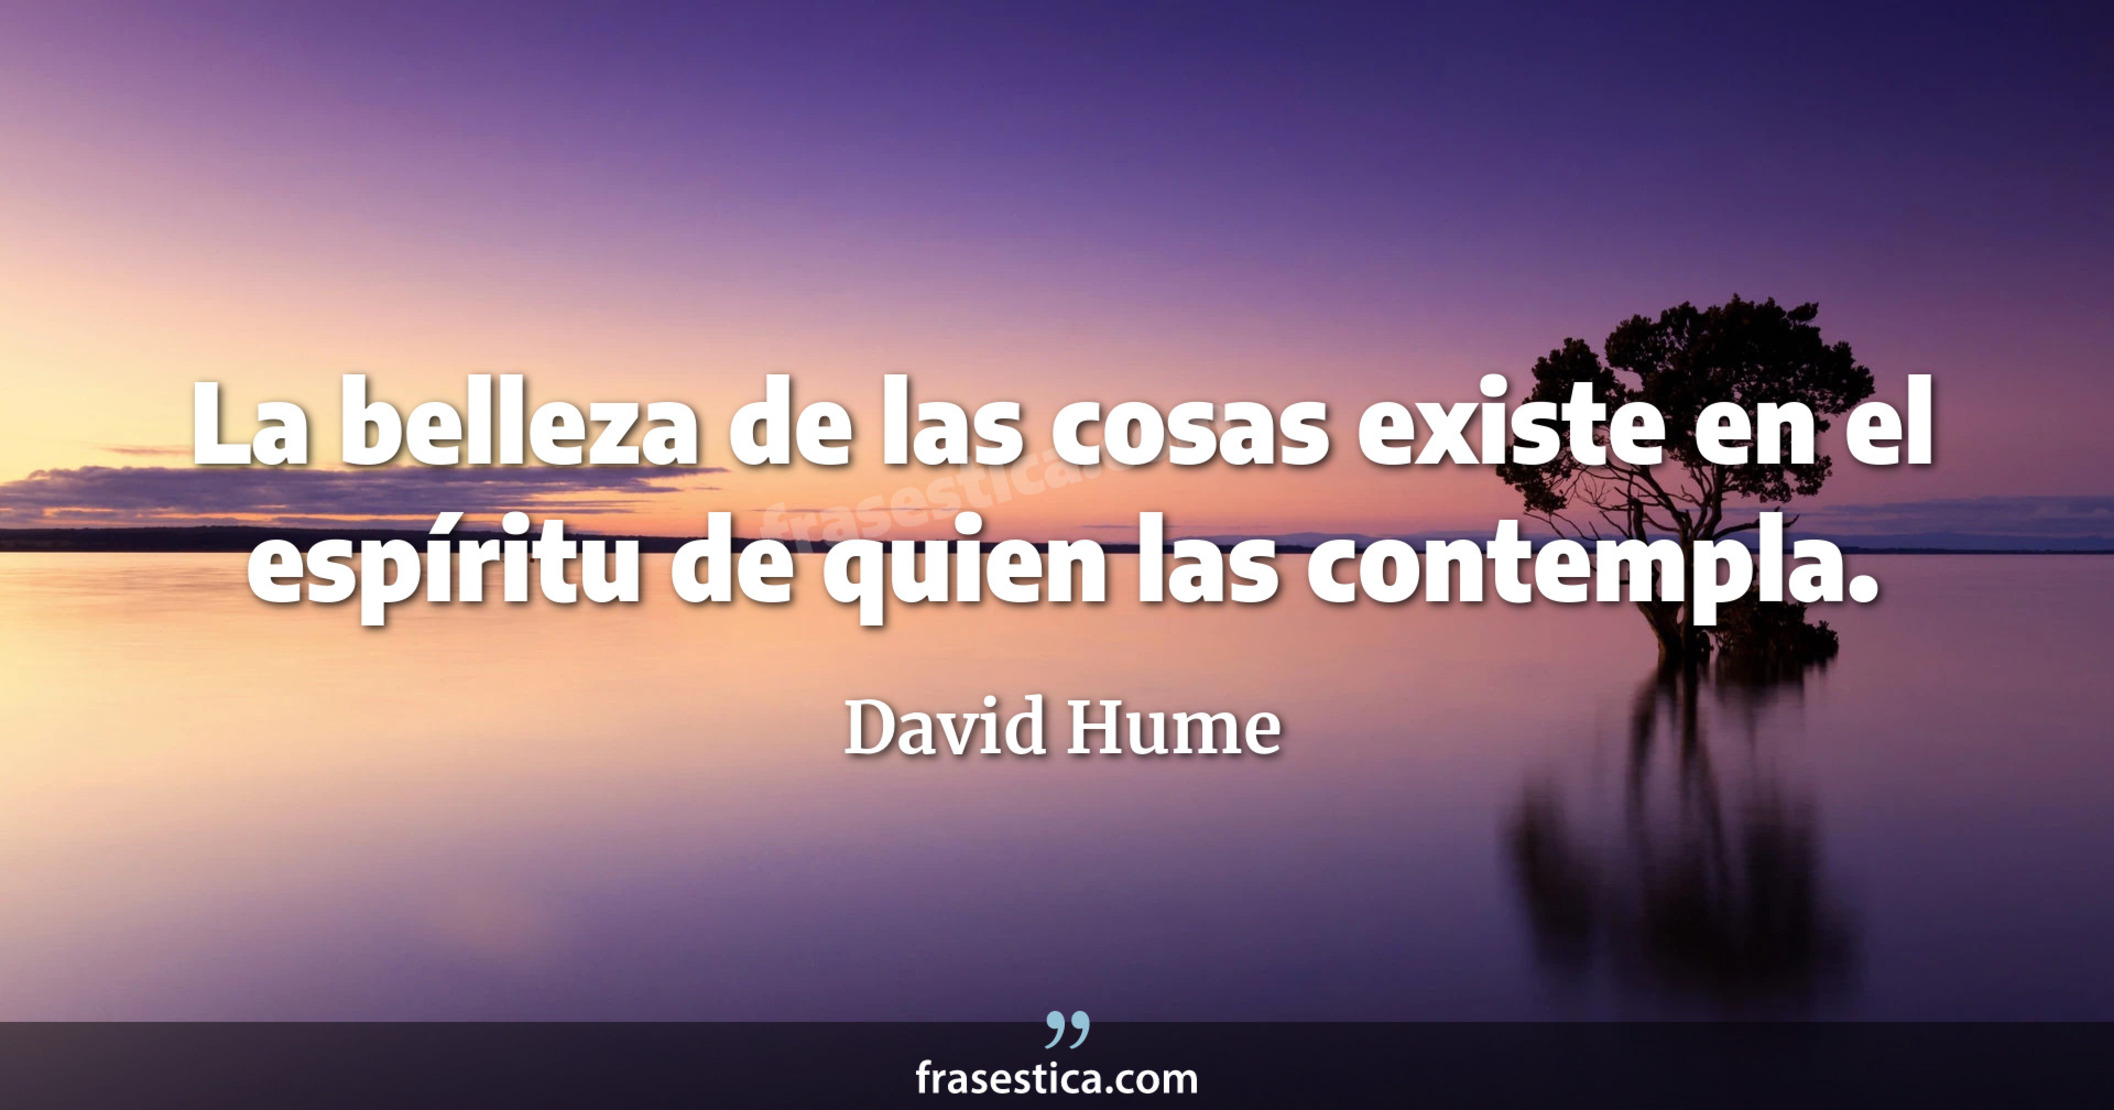 La belleza de las cosas existe en el espíritu de quien las contempla. - David Hume